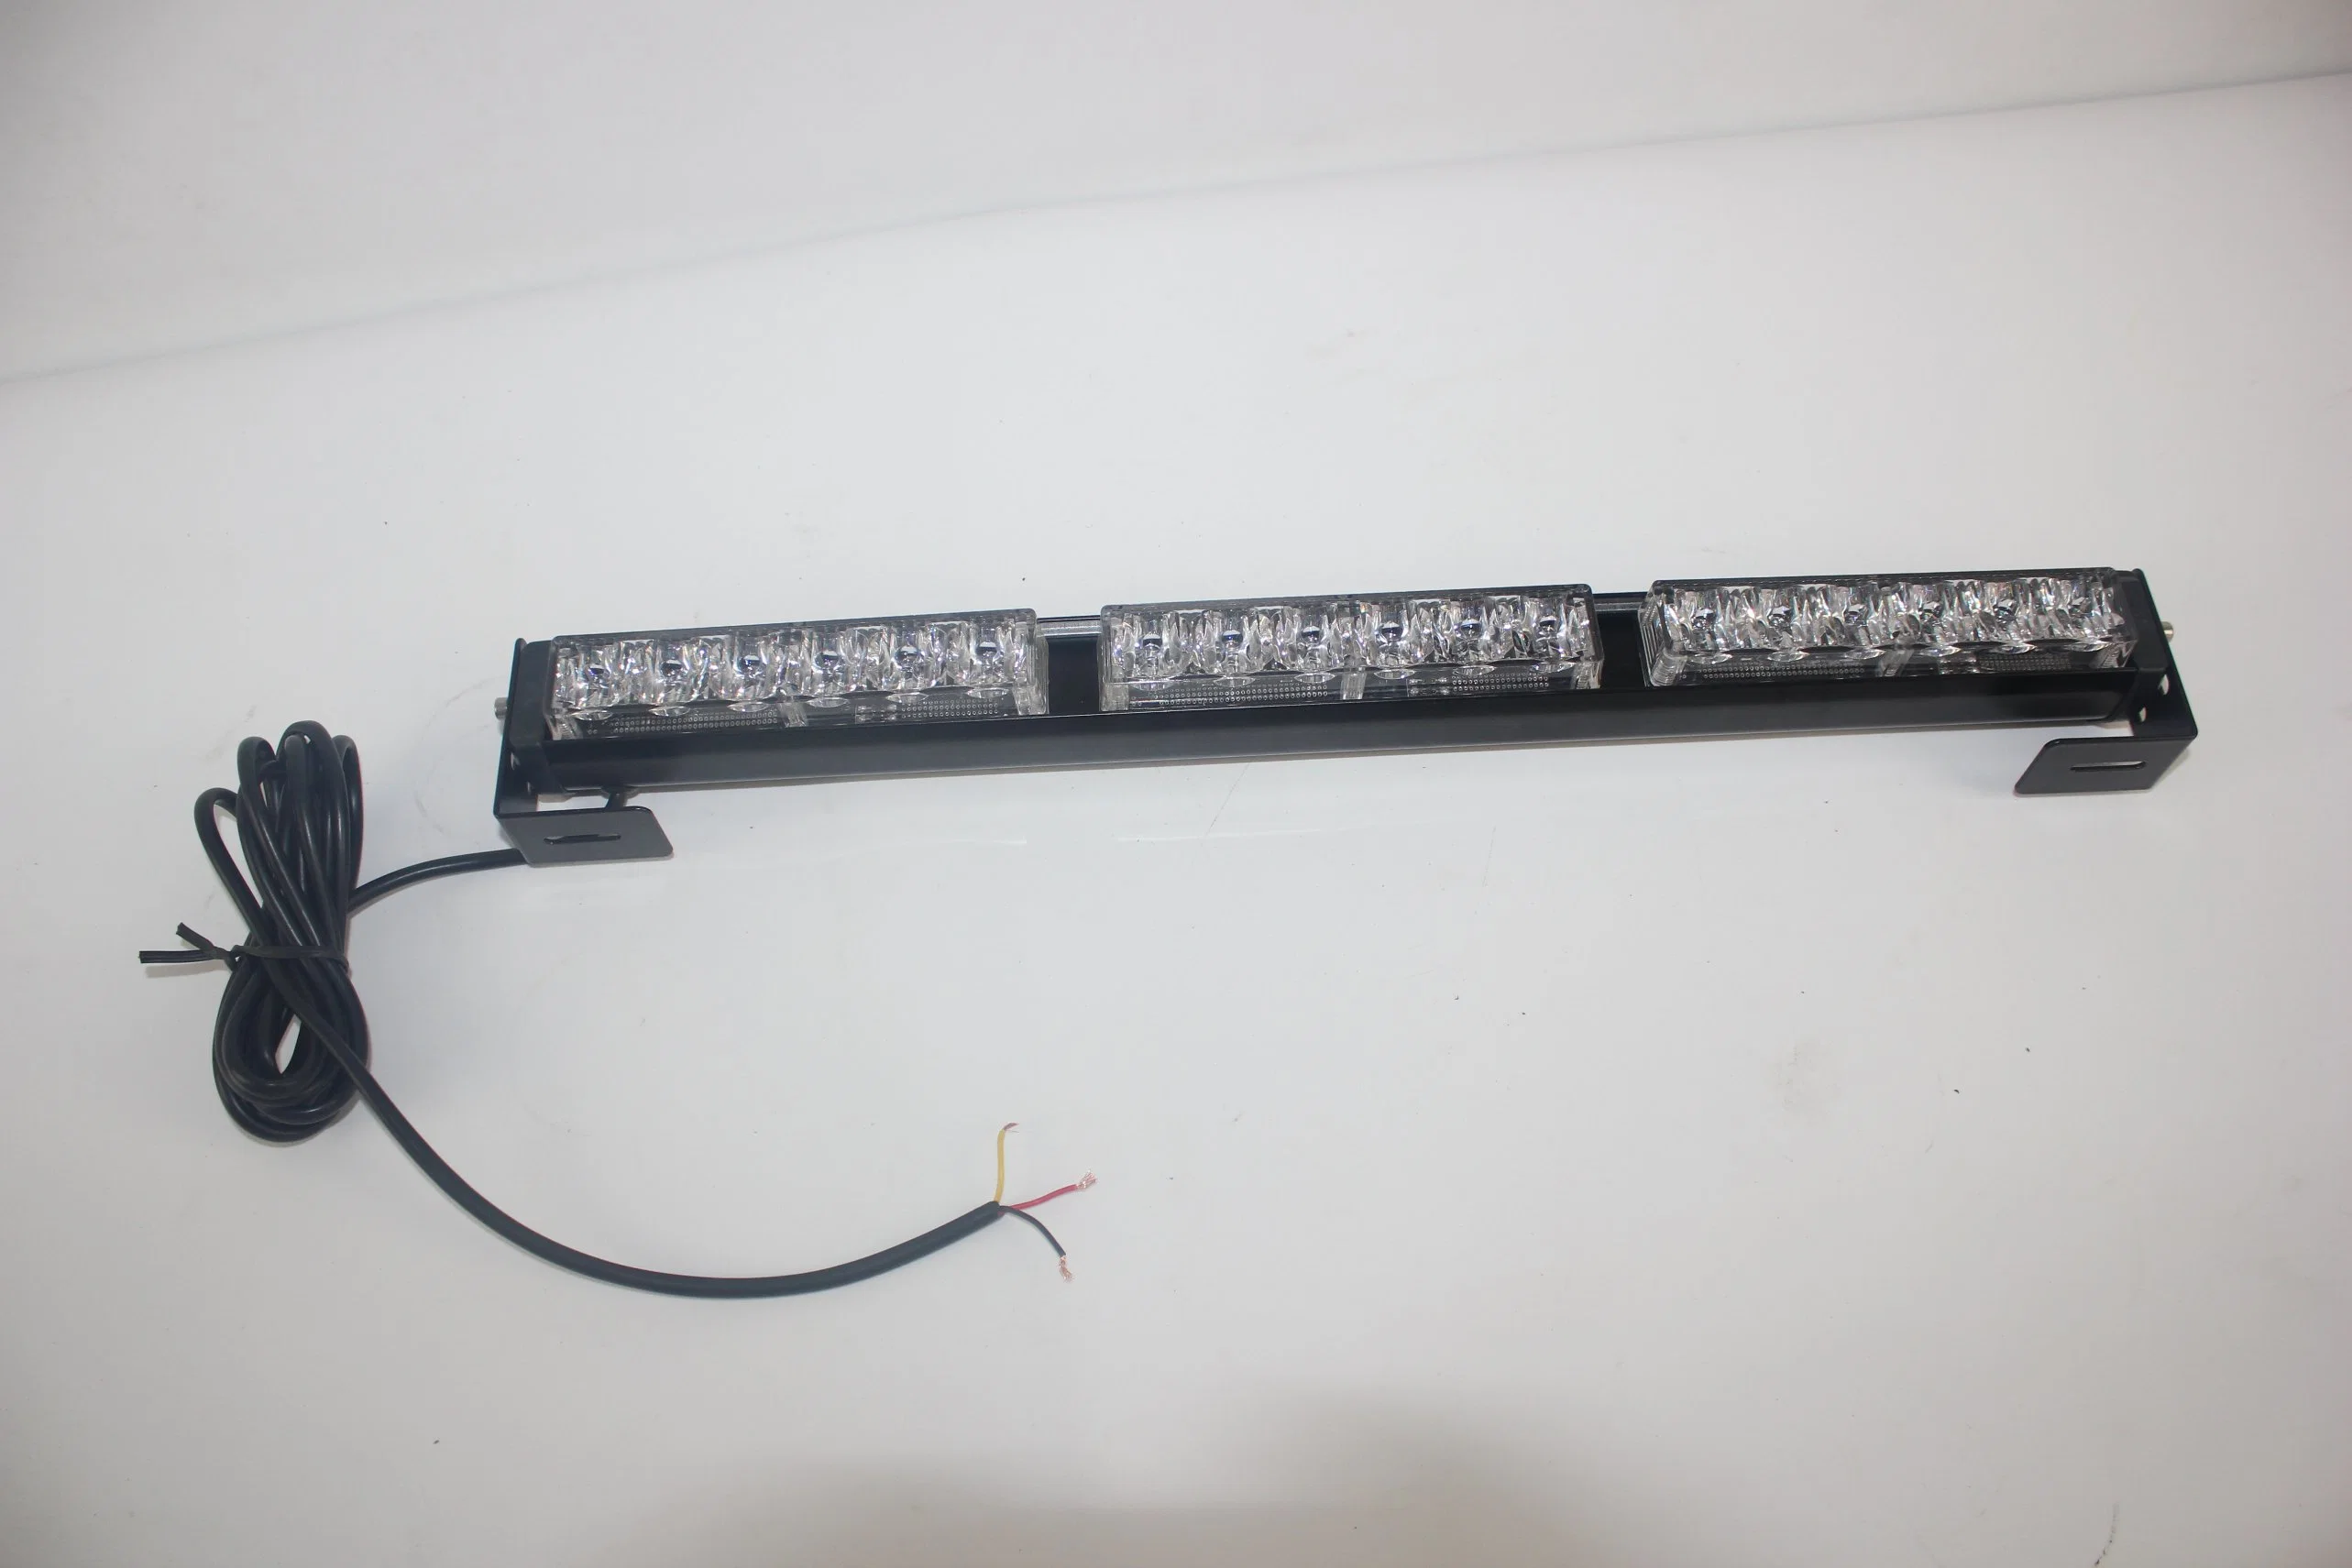 Haibang Amber White LEDs Car Auto Flashing LED Light Bars/Warning Vehicle Grille Lamp